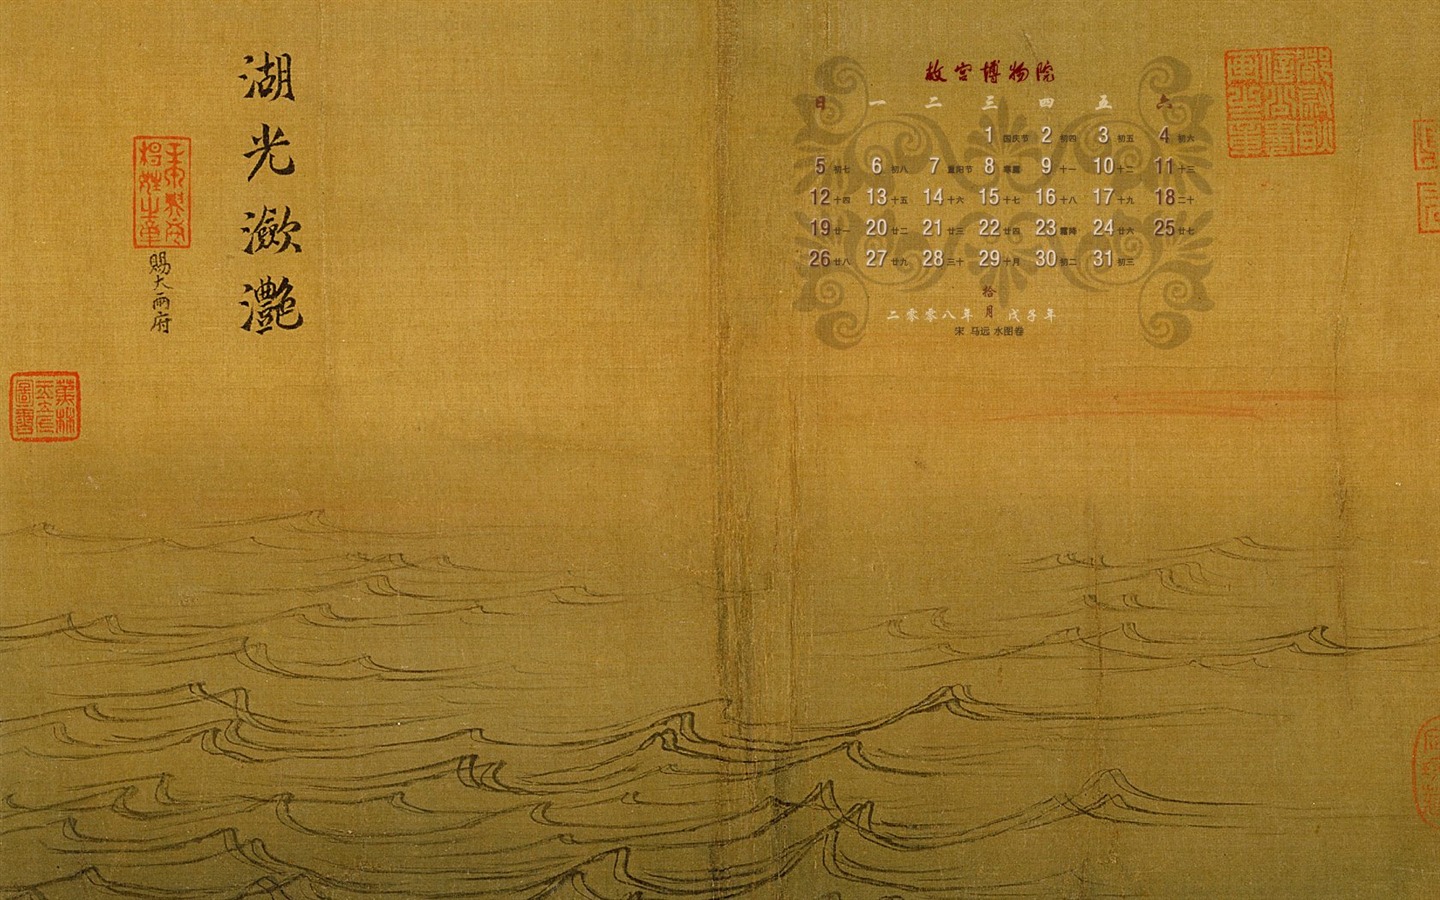 北京故宮博物院 文物展壁紙(二) #18 - 1440x900